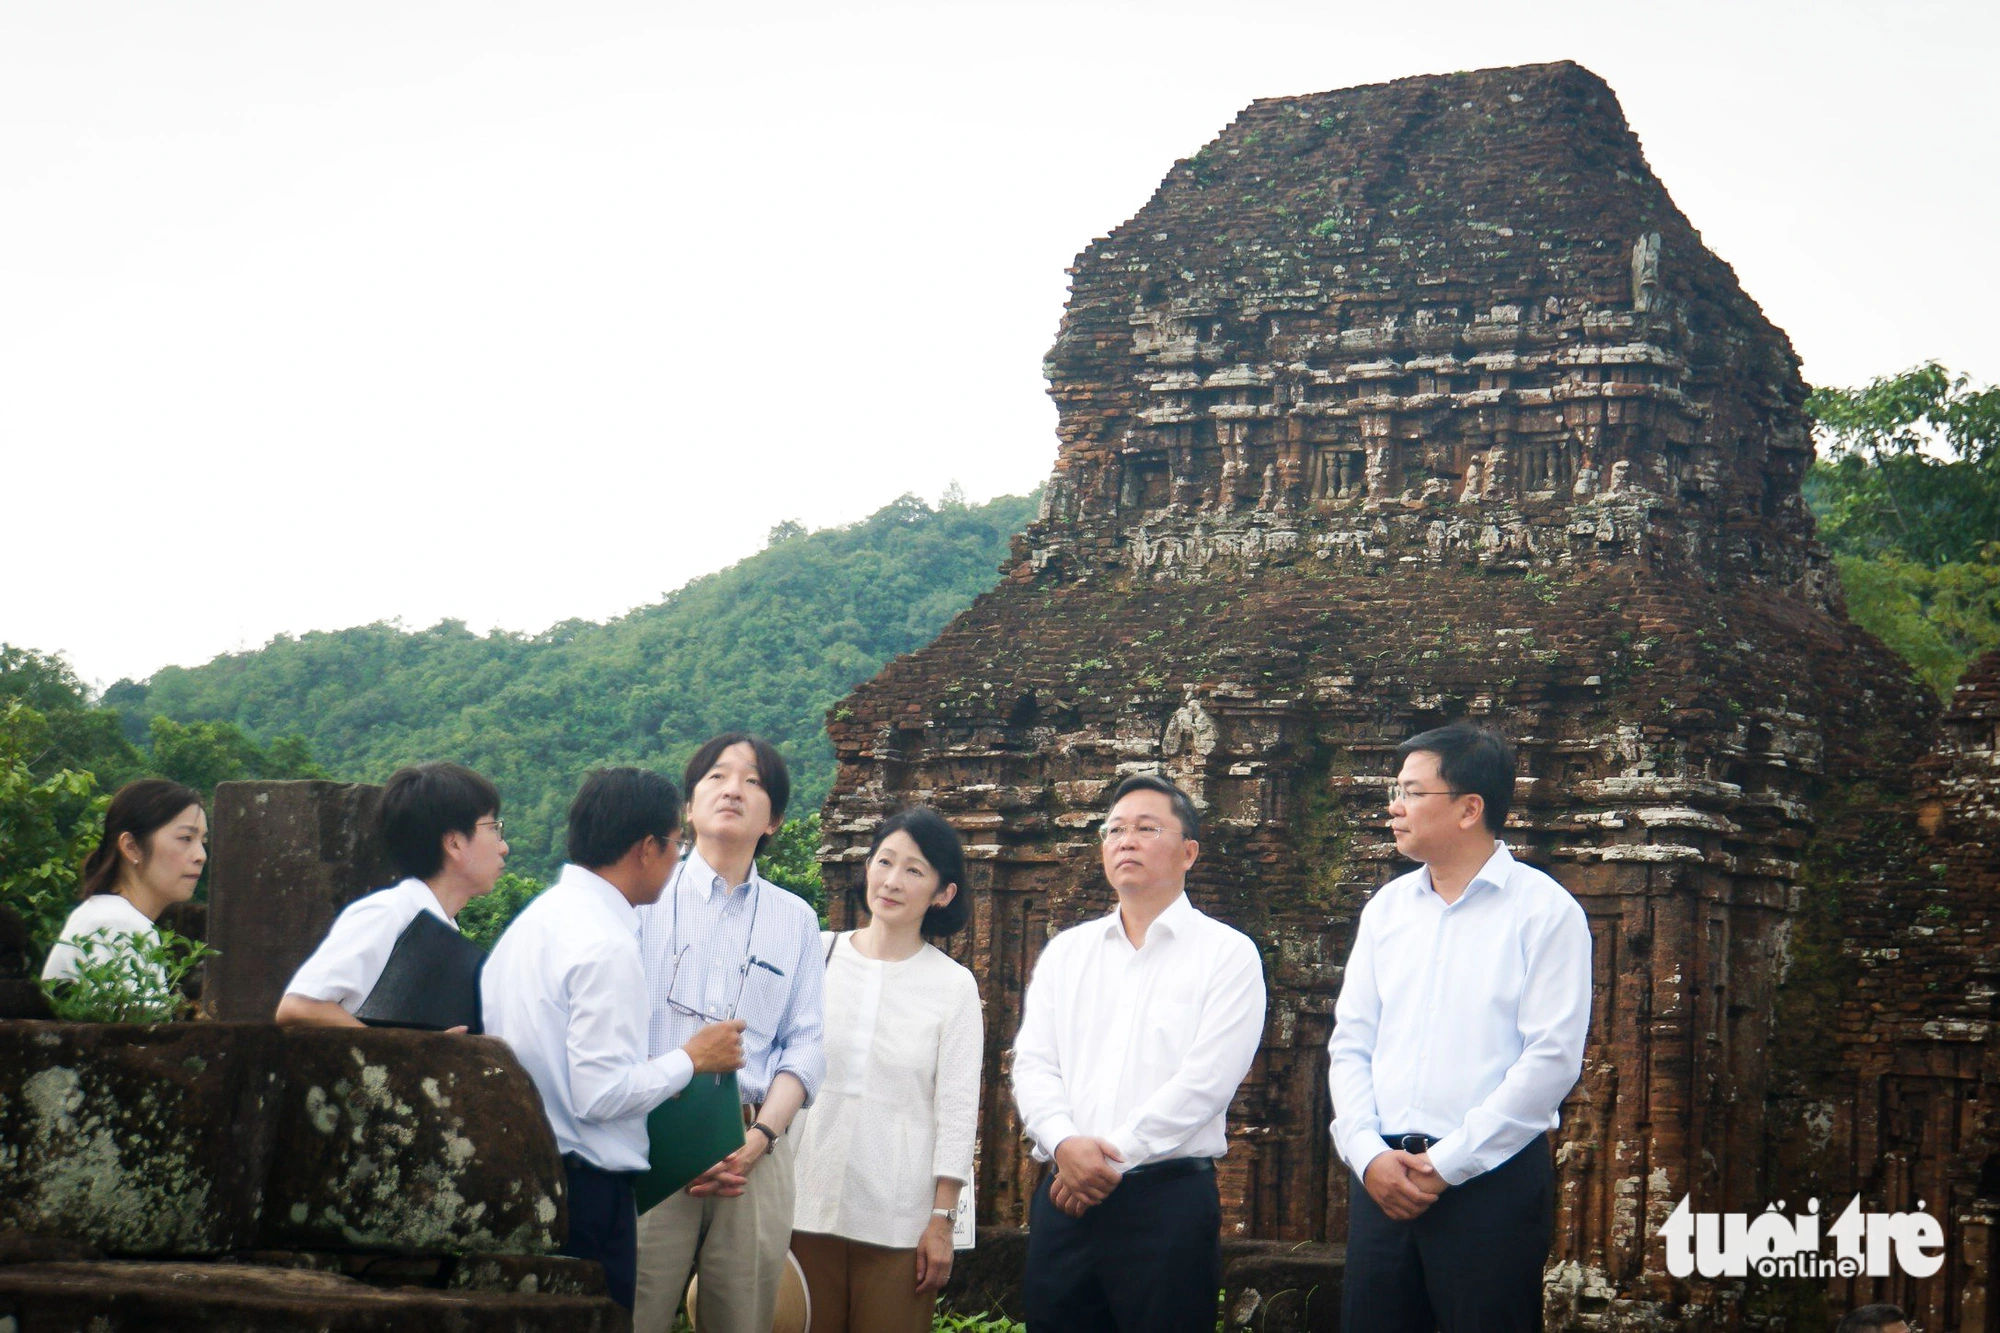 Hoàng thái tử Akishino và Công nương Kiko nghe thuyết minh về khu đền tháp Mỹ Sơn tại tỉnh Quảng Nam ngày 24-9 - Ảnh: HOÀNG THỌ